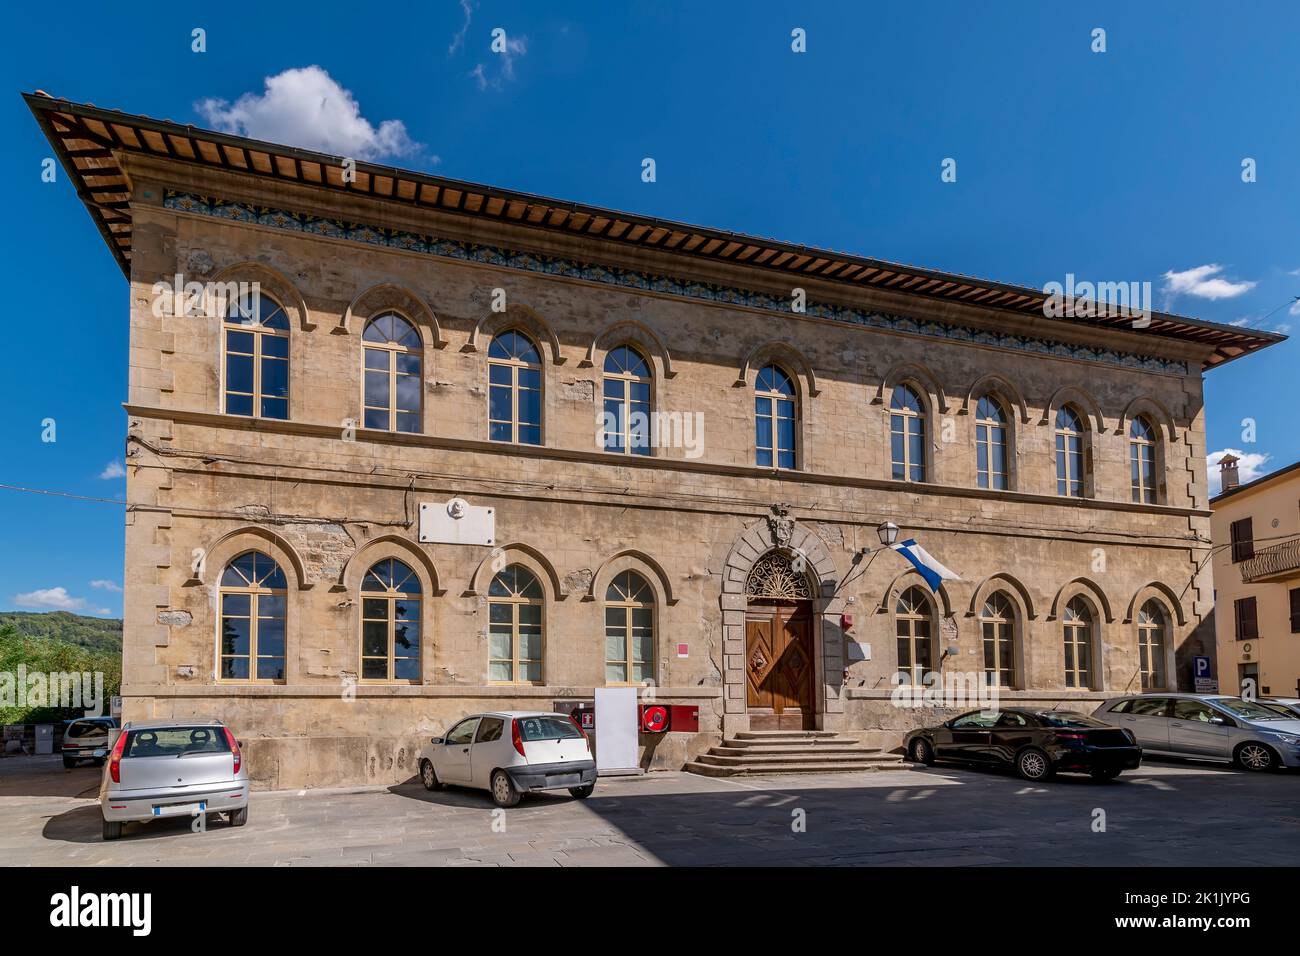 La antigua sede palaciega de la Casa de la Cultura y las Asociaciones, Deruta, Perugia, Italia Foto de stock